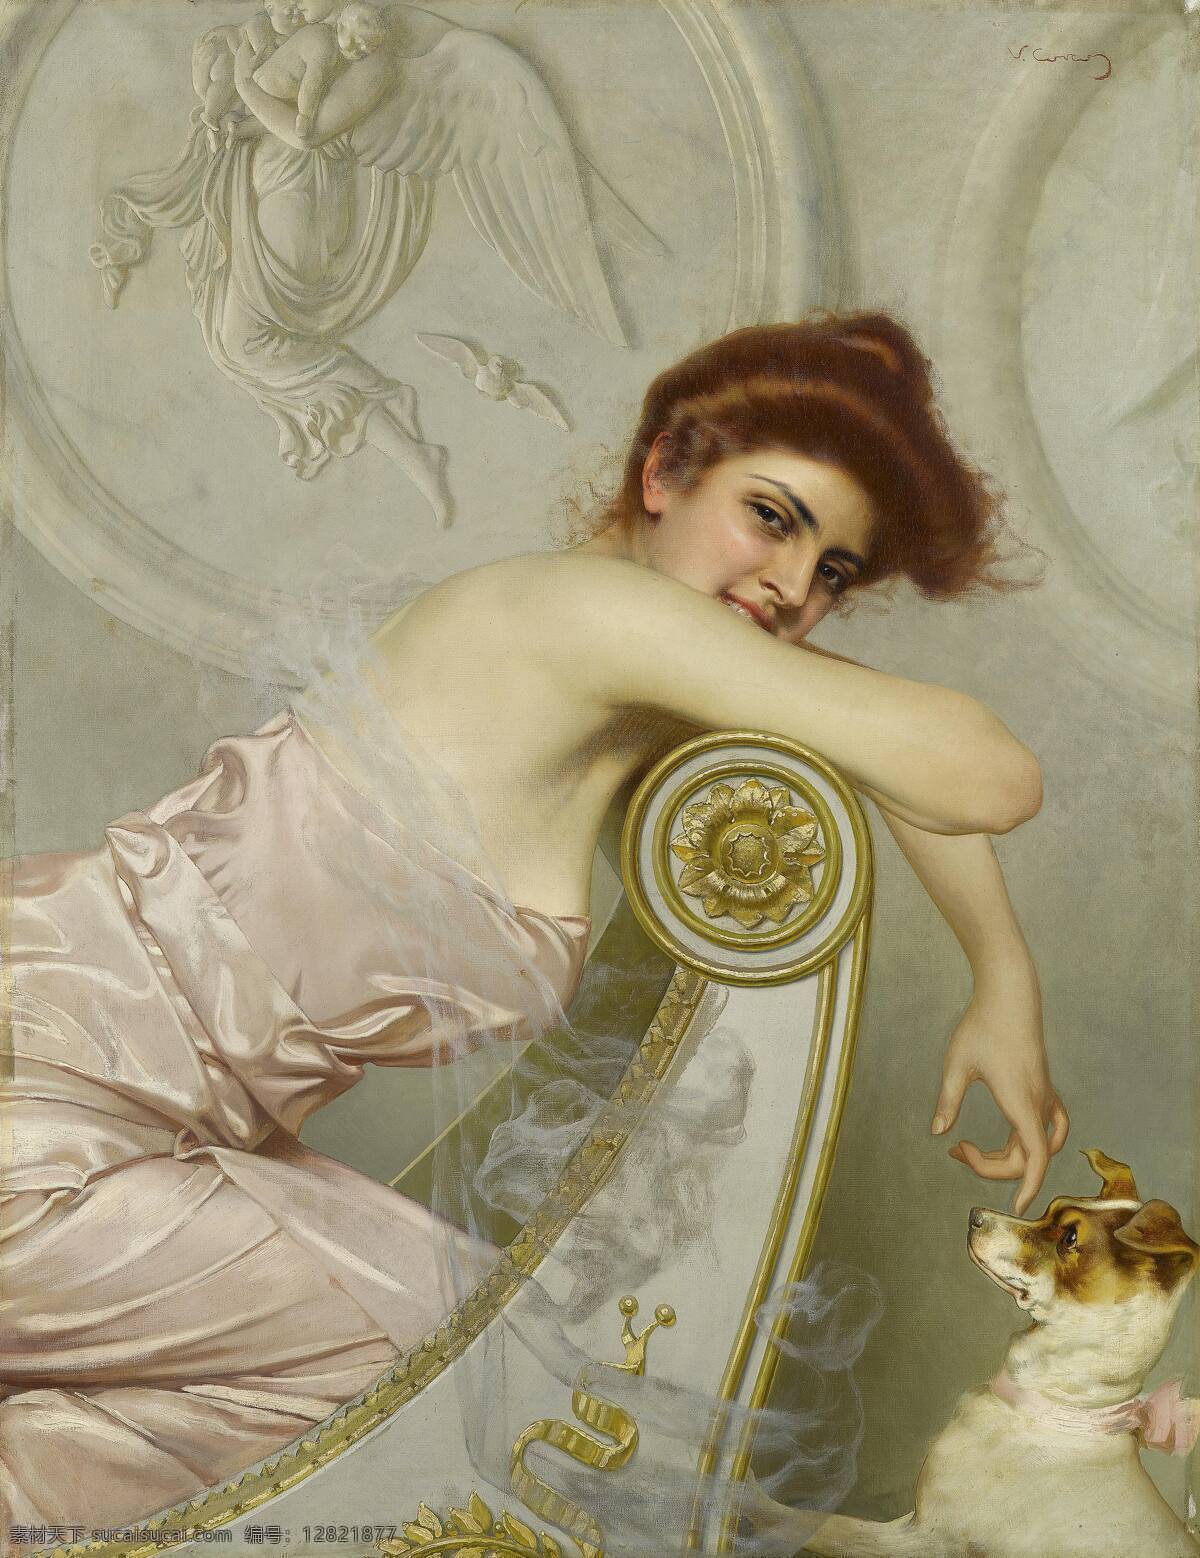 贵妇与狗 贵族妇人 宠物 逗弄小狗 贵族之家 19世纪油画 油画 绘画书法 文化艺术